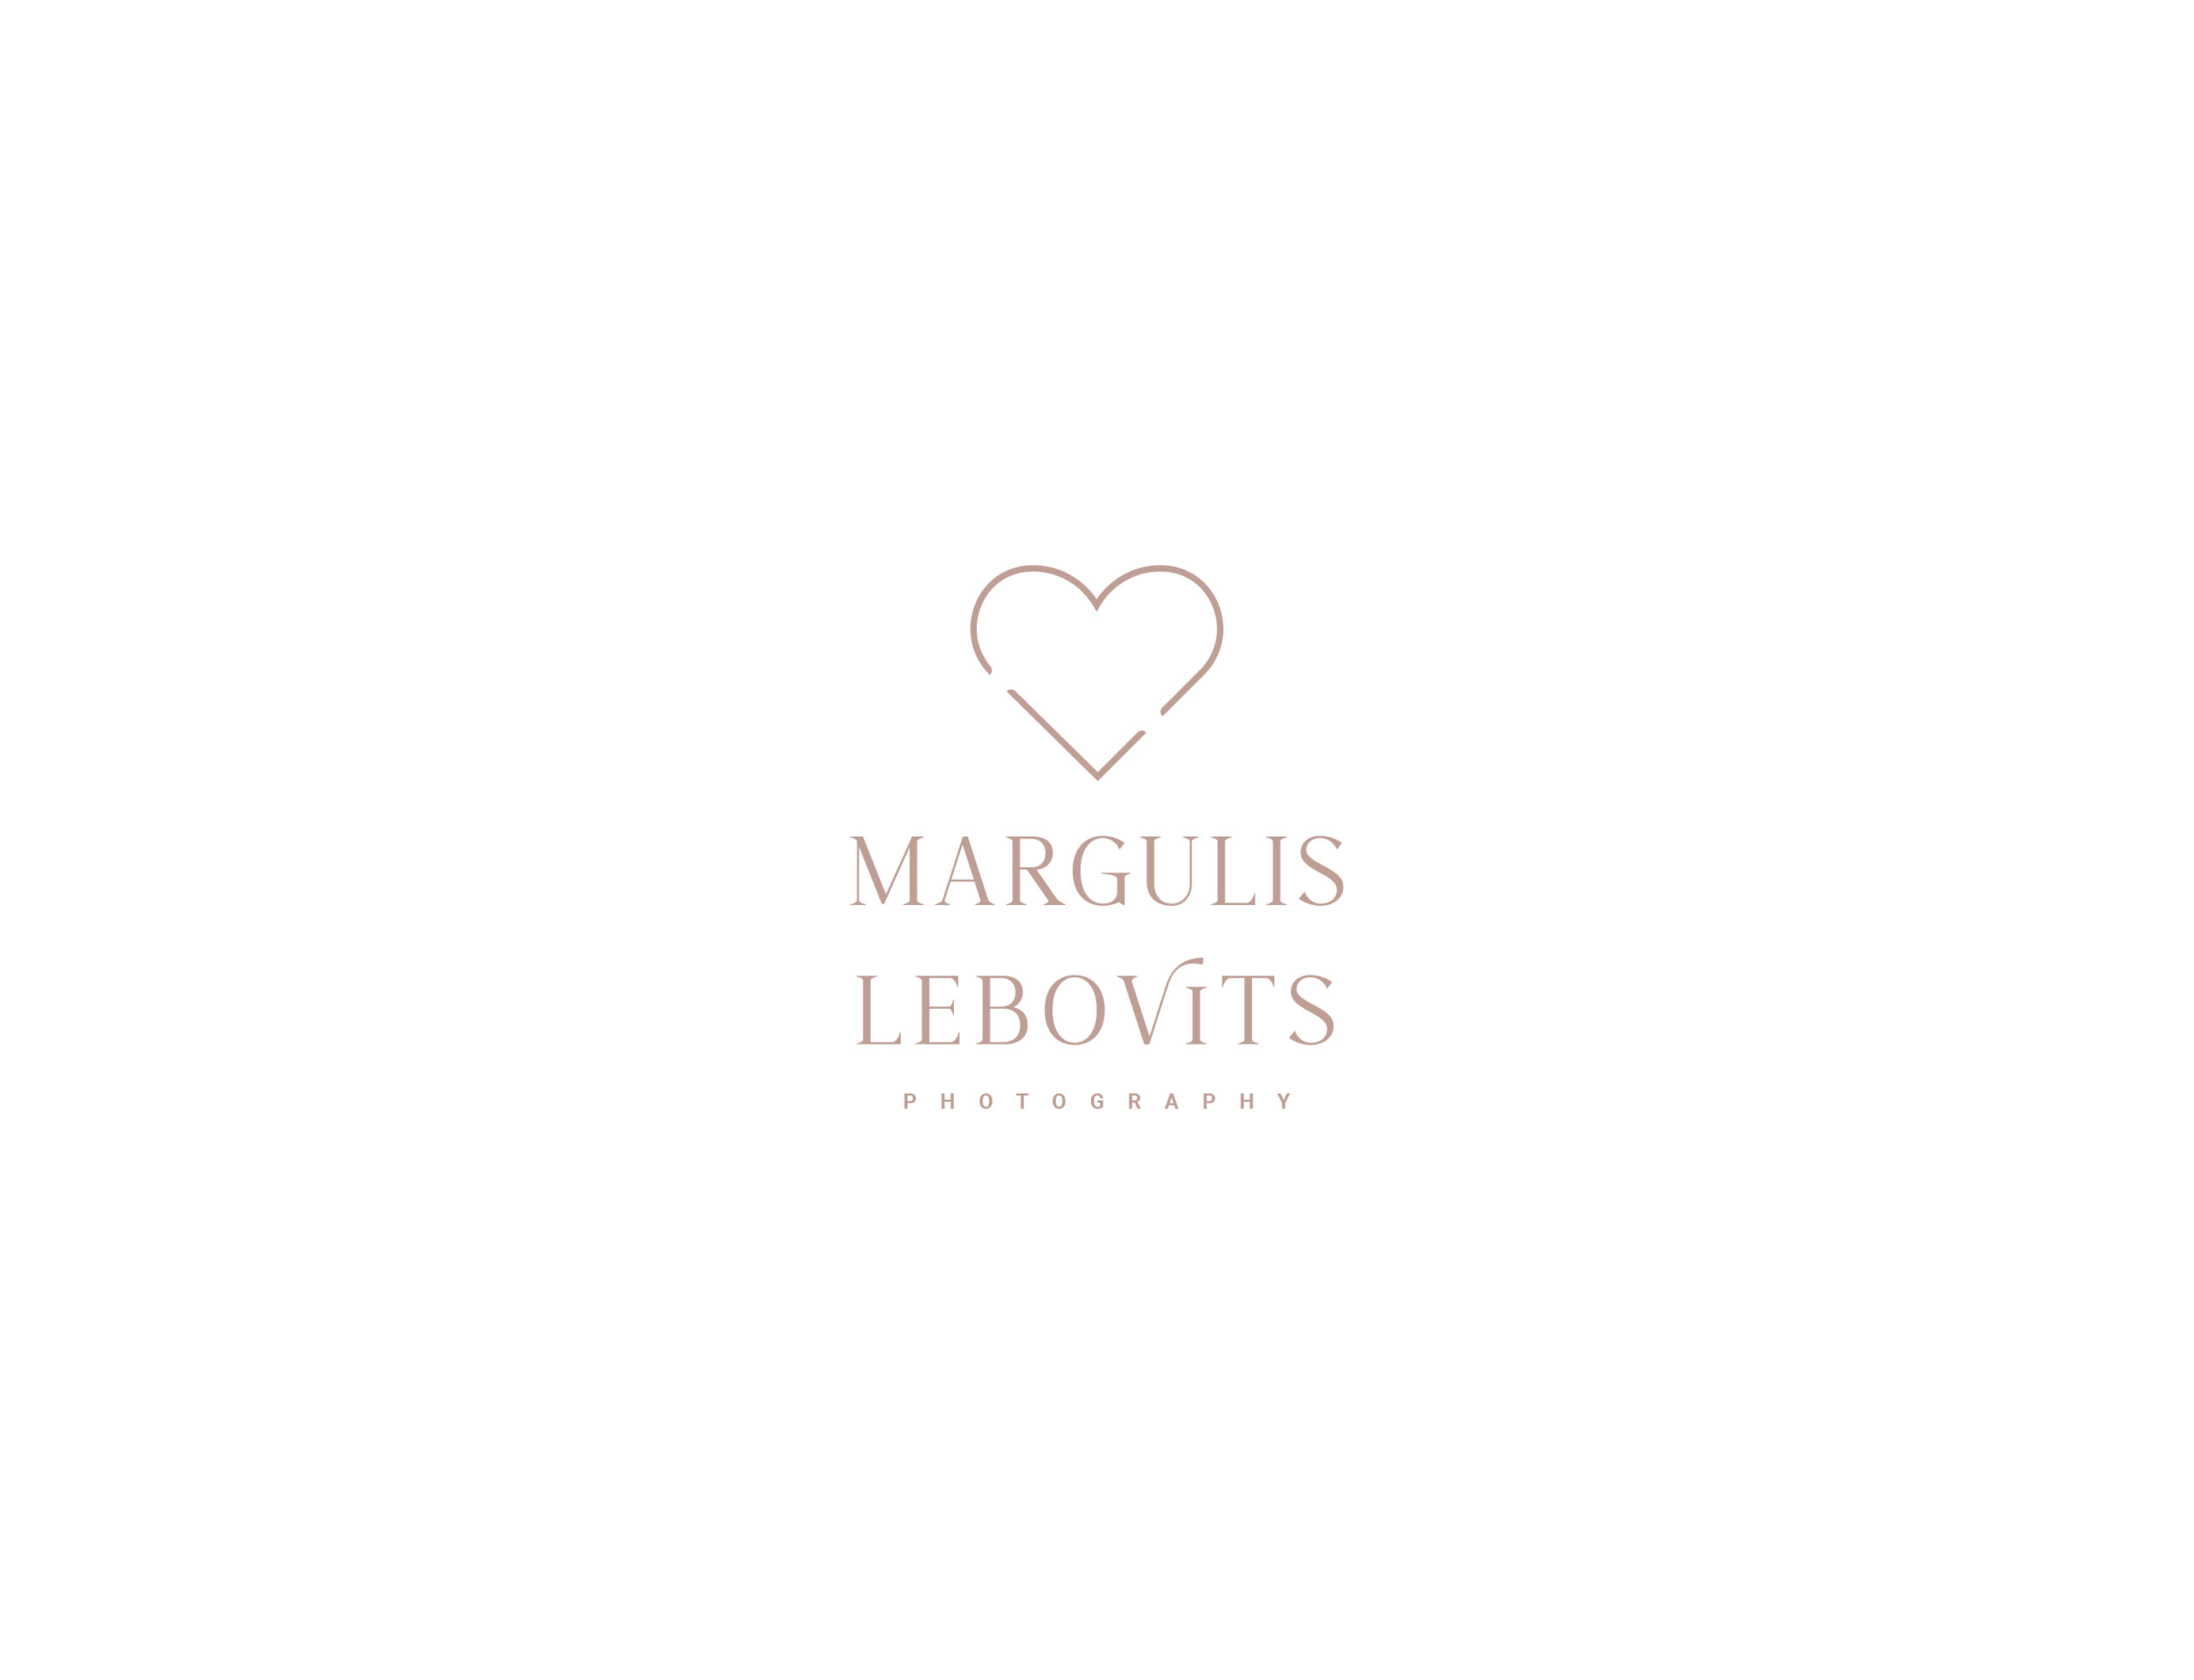 Margulis Lebovits